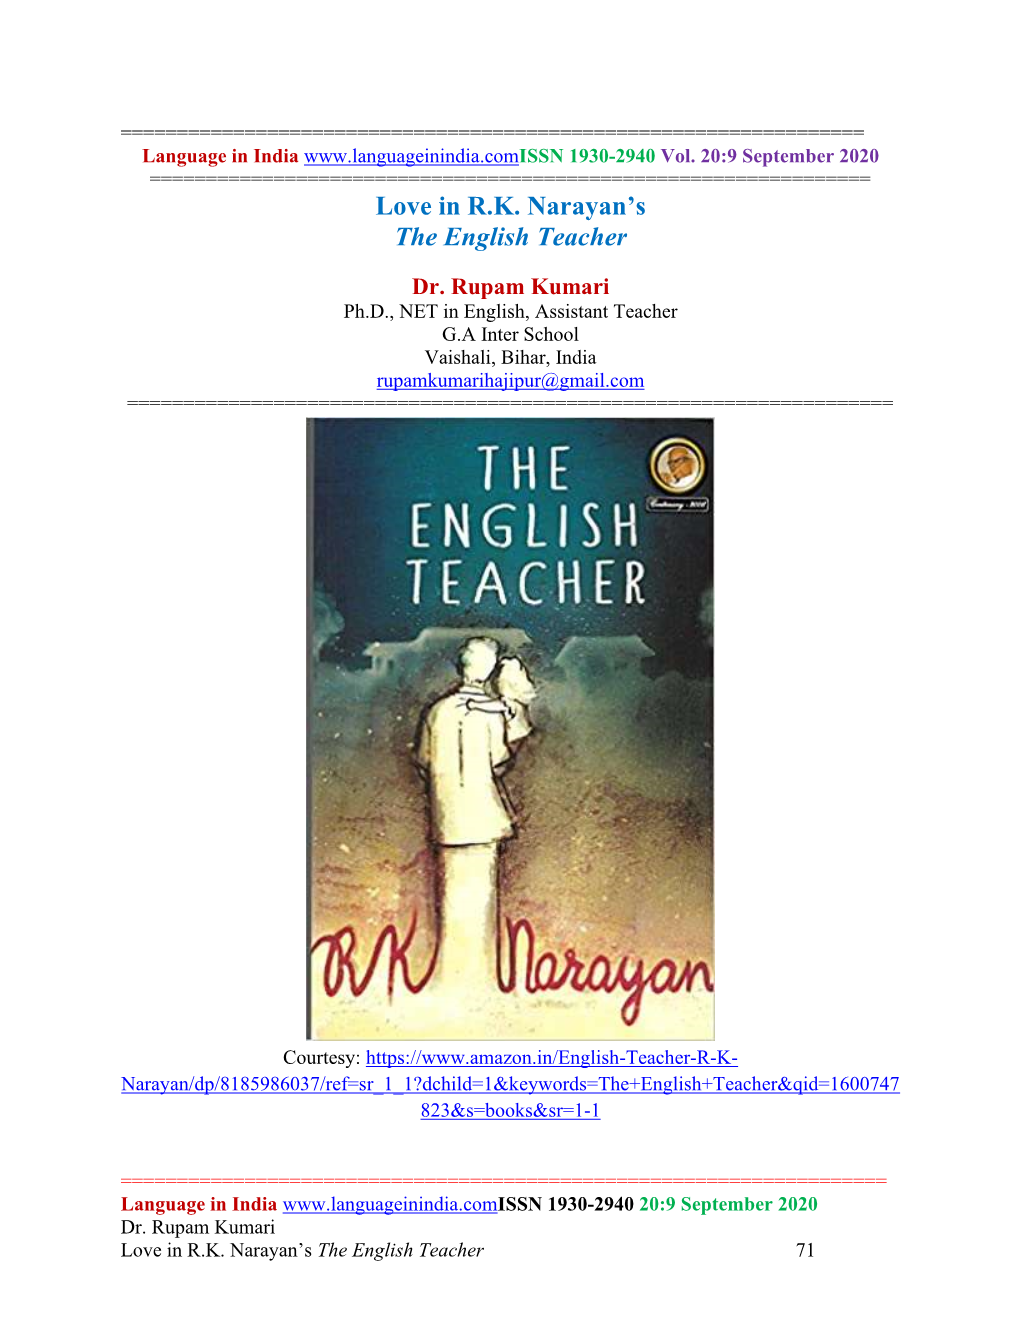 Love in R.K. Narayan's the English Teacher